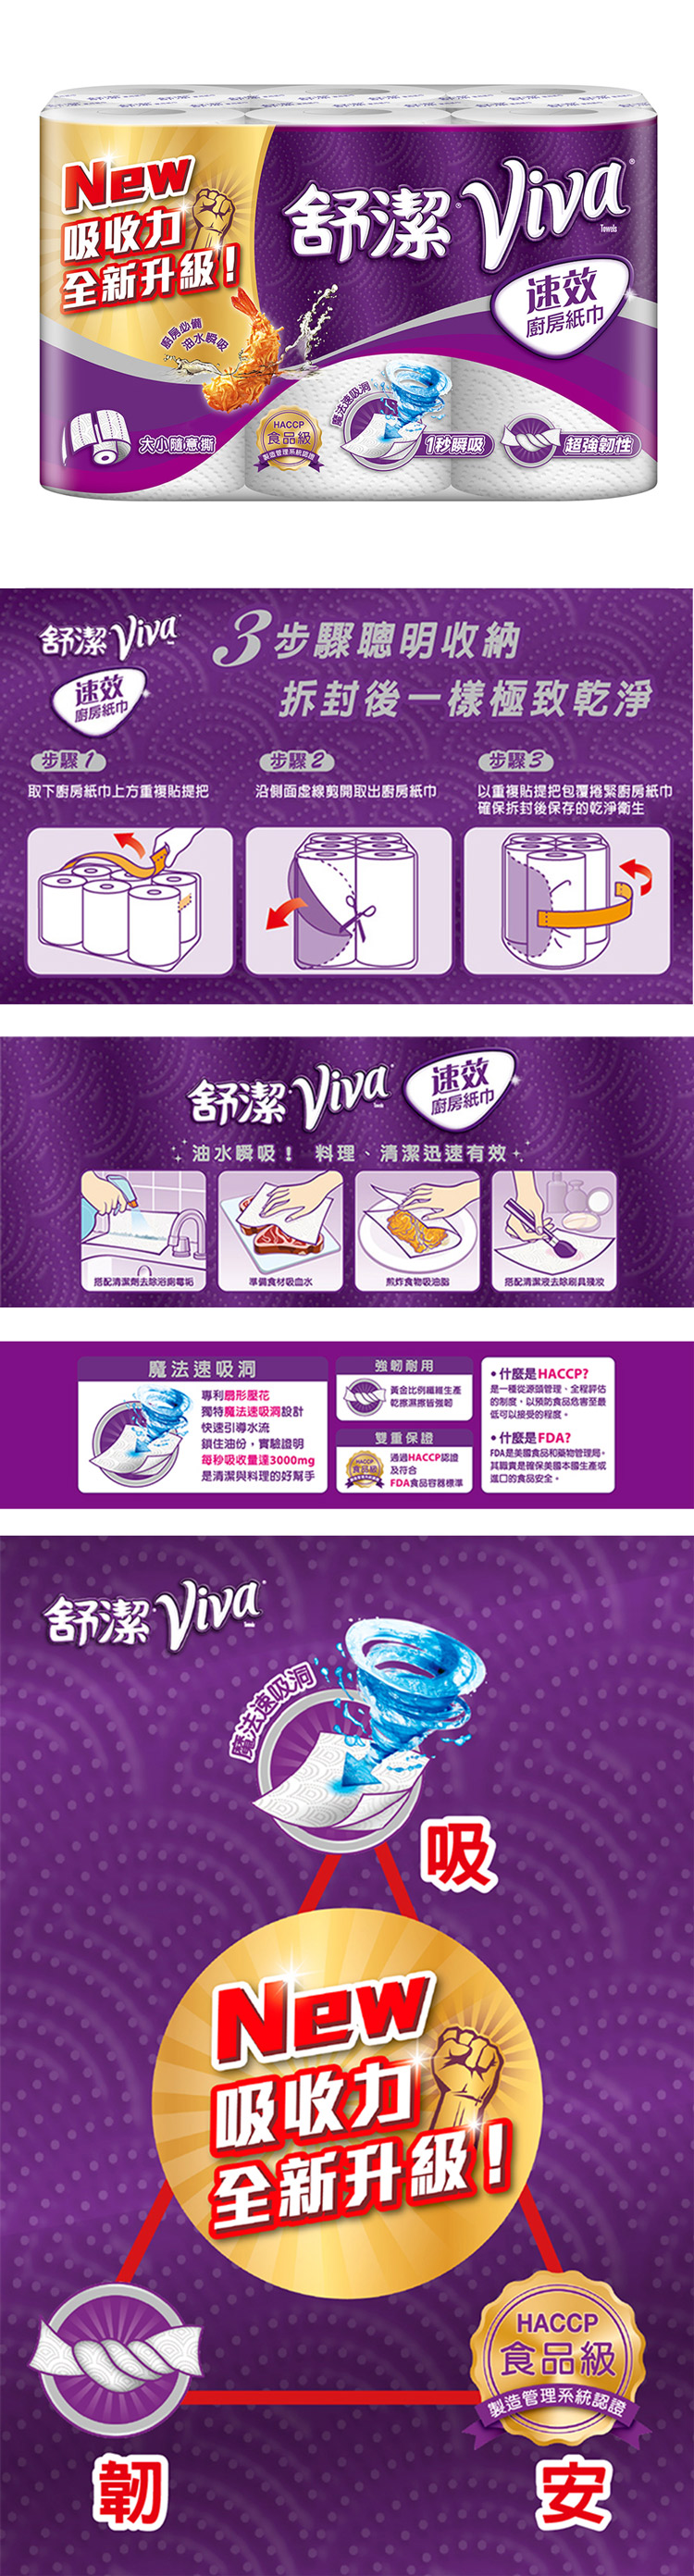 【舒潔Kleenex】VIVA速效廚房紙巾(大尺寸紙巾、大小隨意撕)